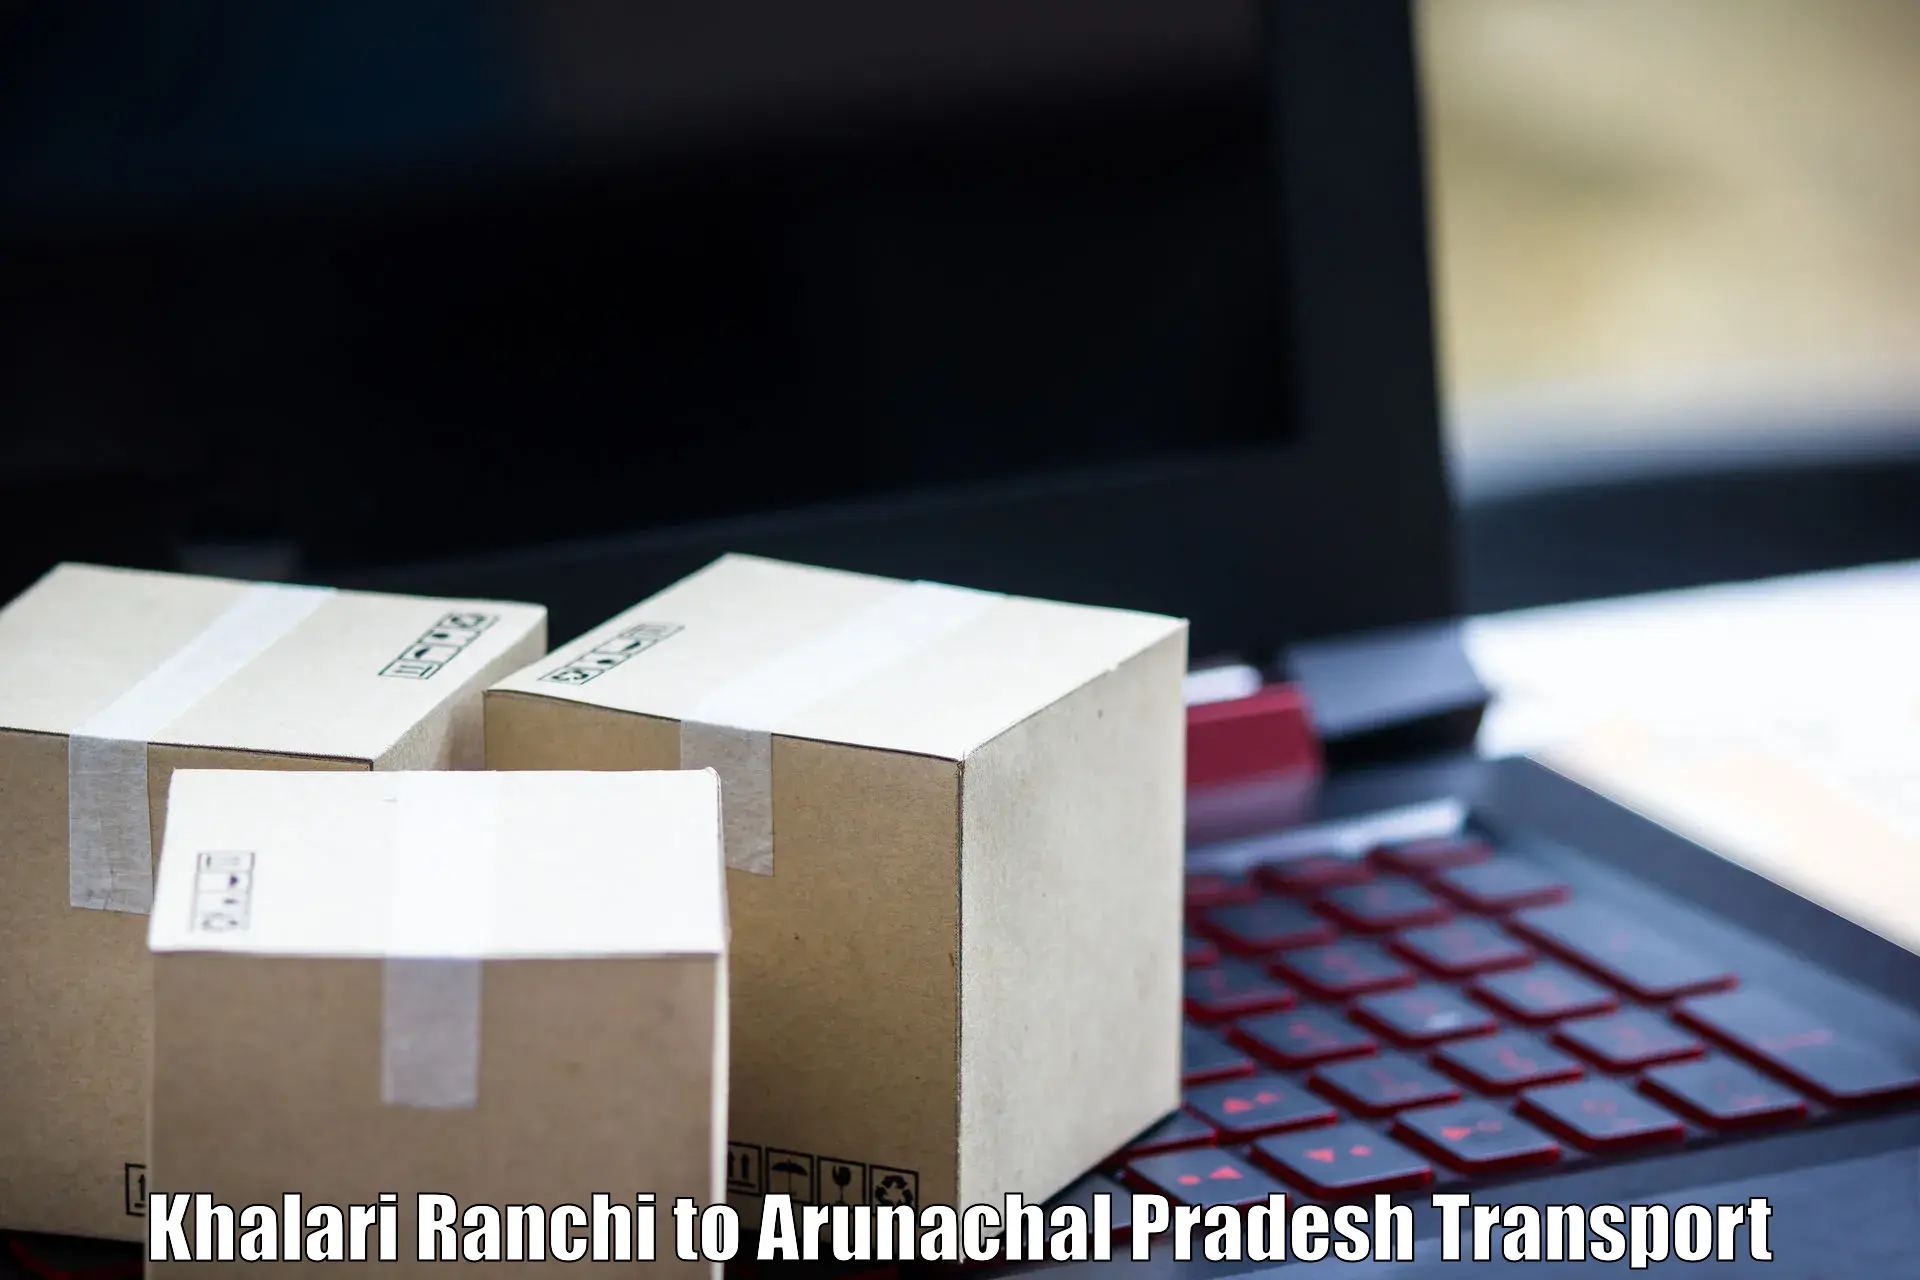 Shipping partner Khalari Ranchi to Lohit